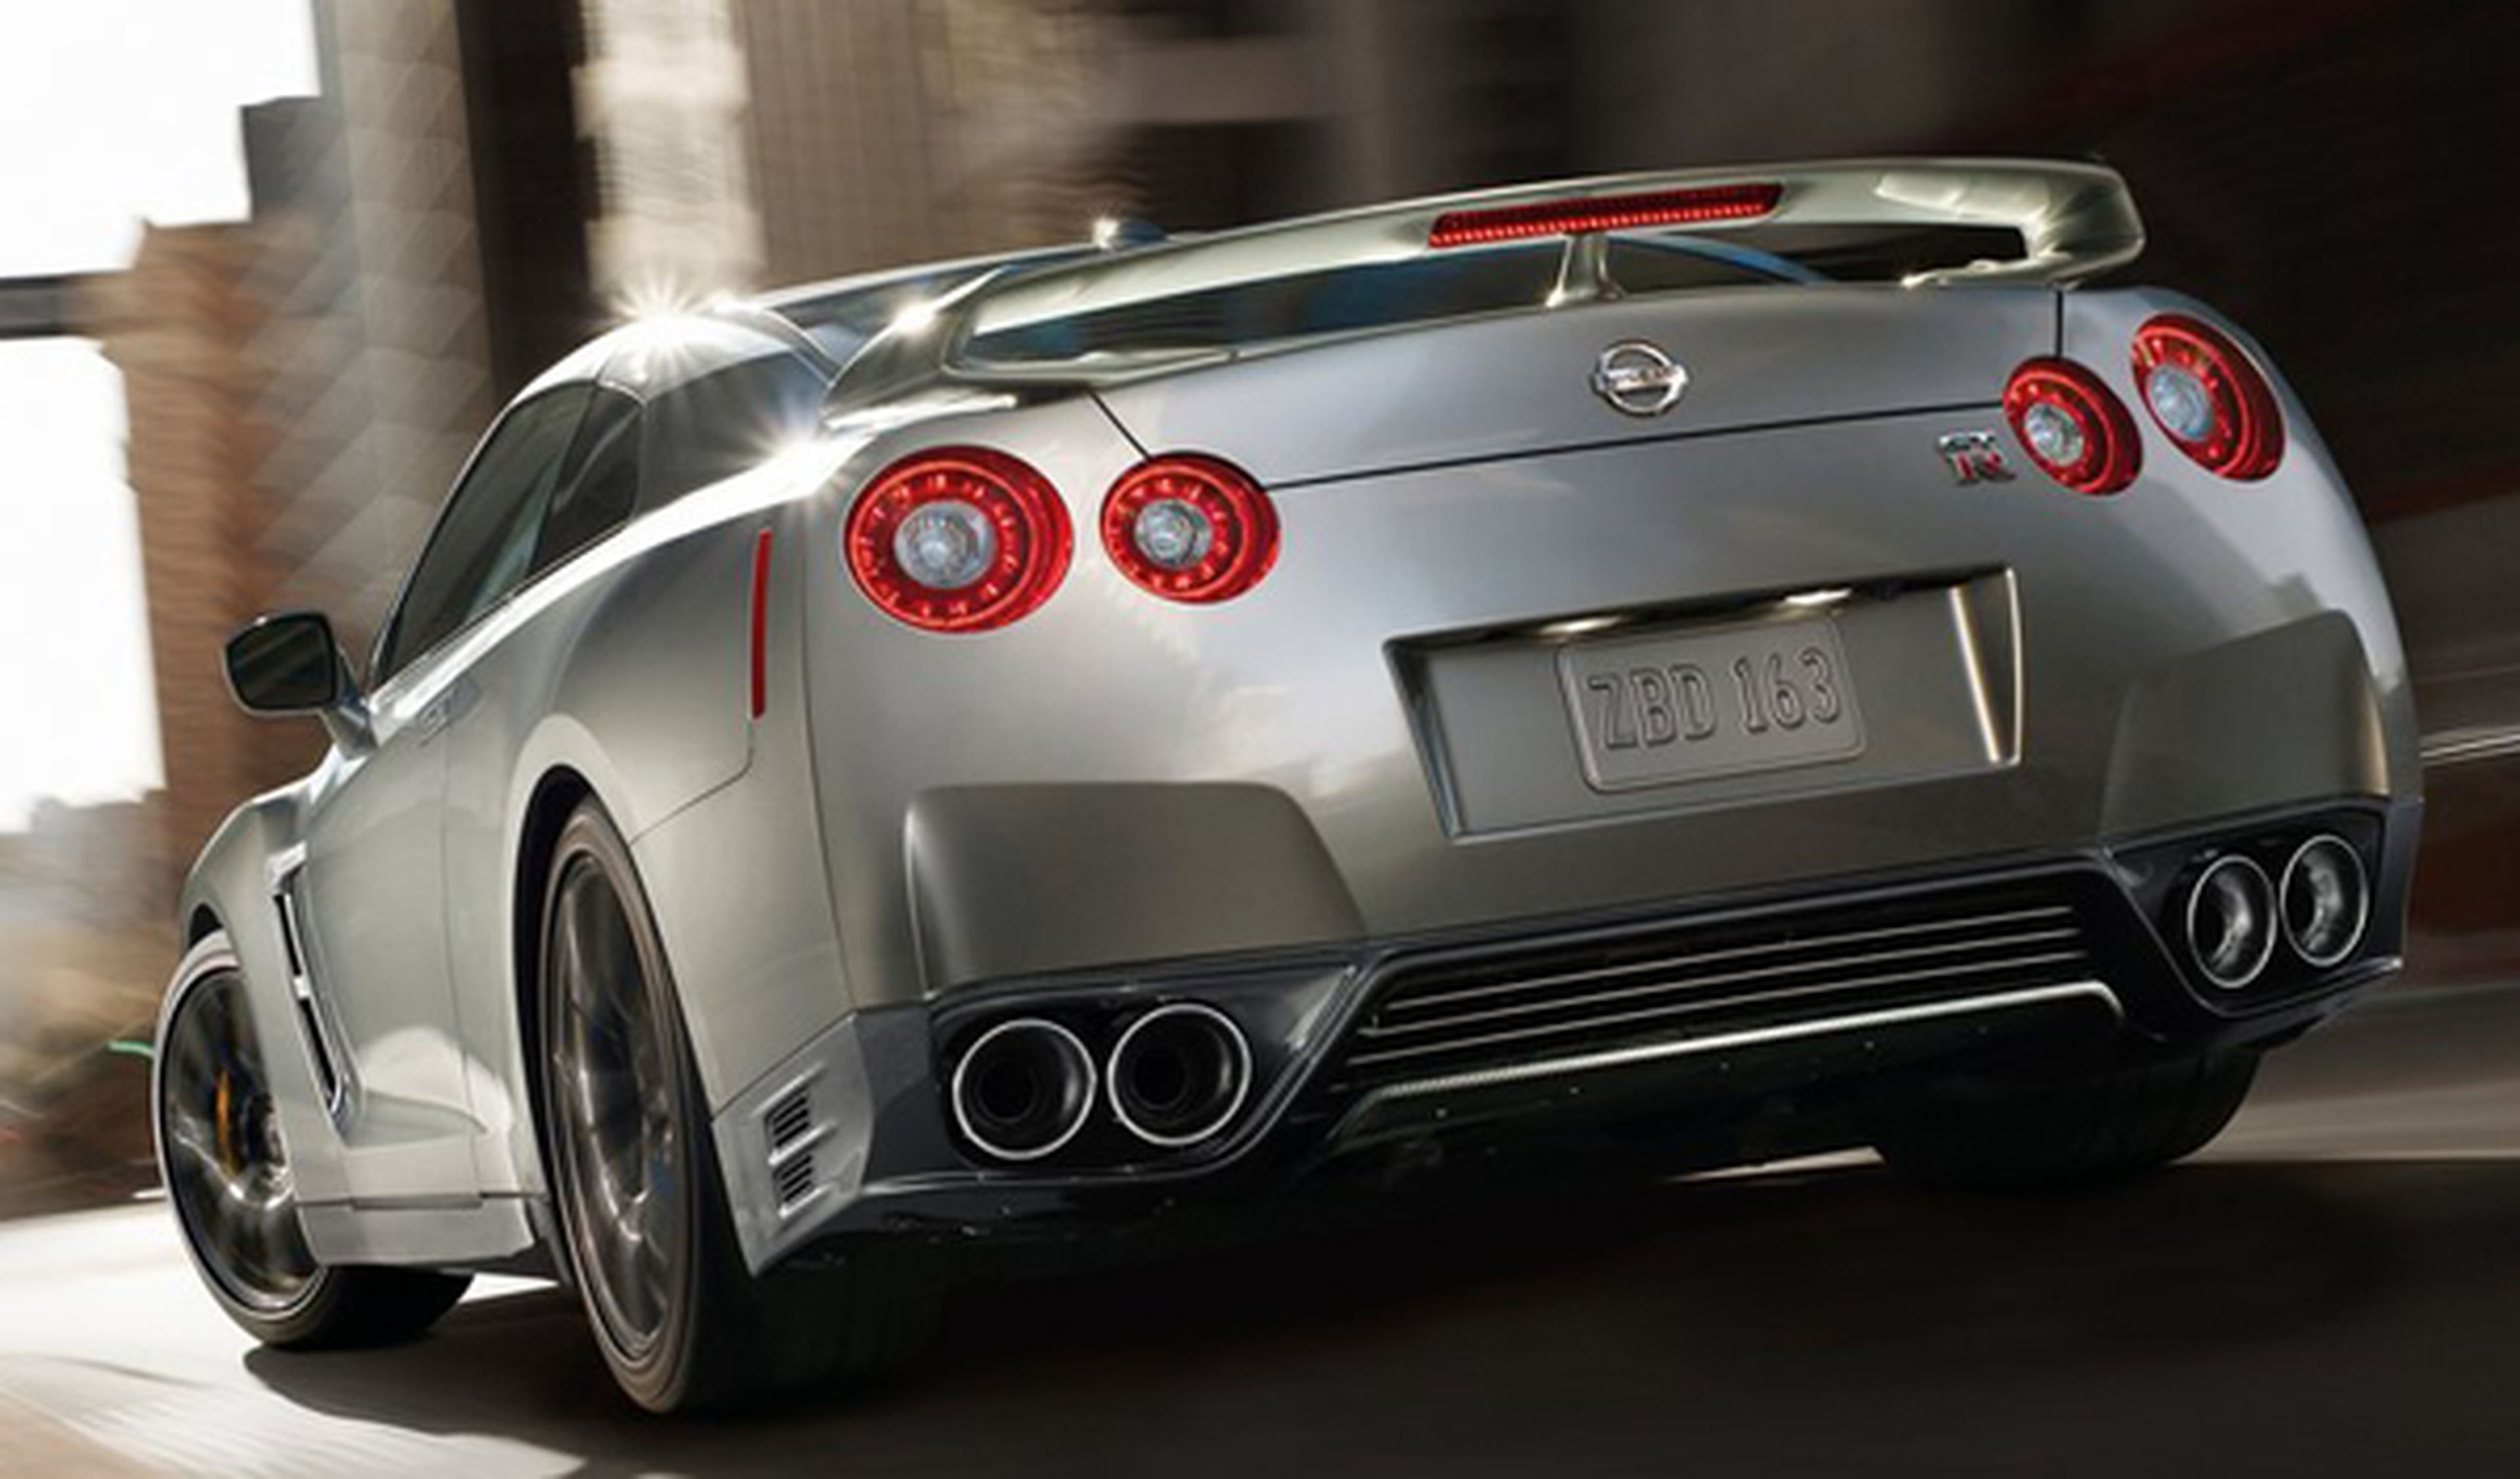 Nissan GT-R 2014, la innovación que entusiasma